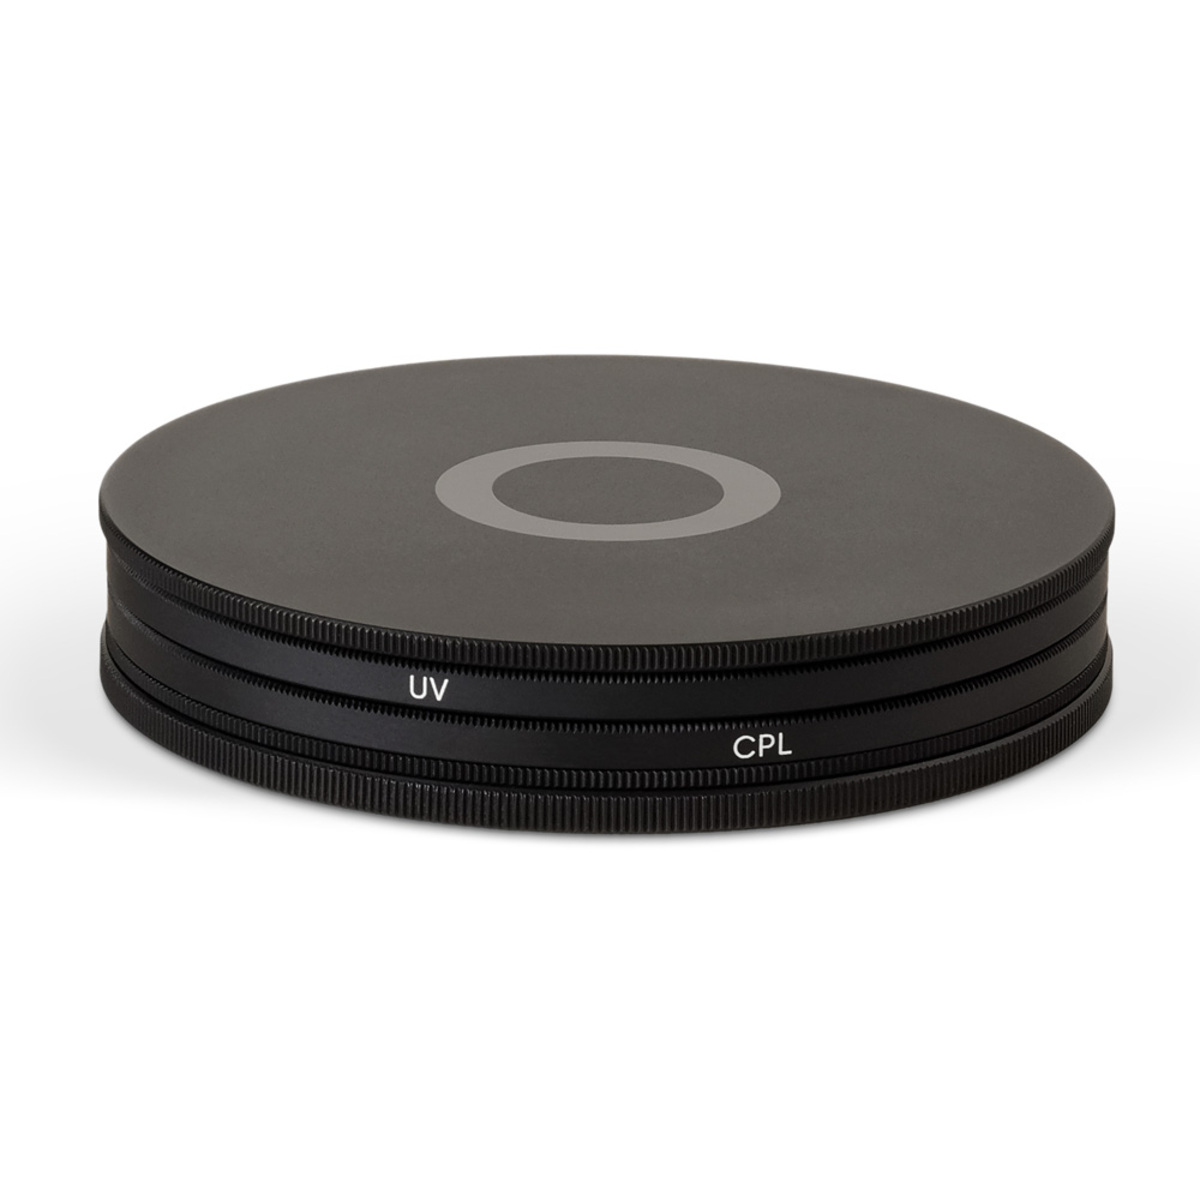 Urth 95mm UV + Circular Polarizing (CPL) Objektivfilter Kit (Plus+)